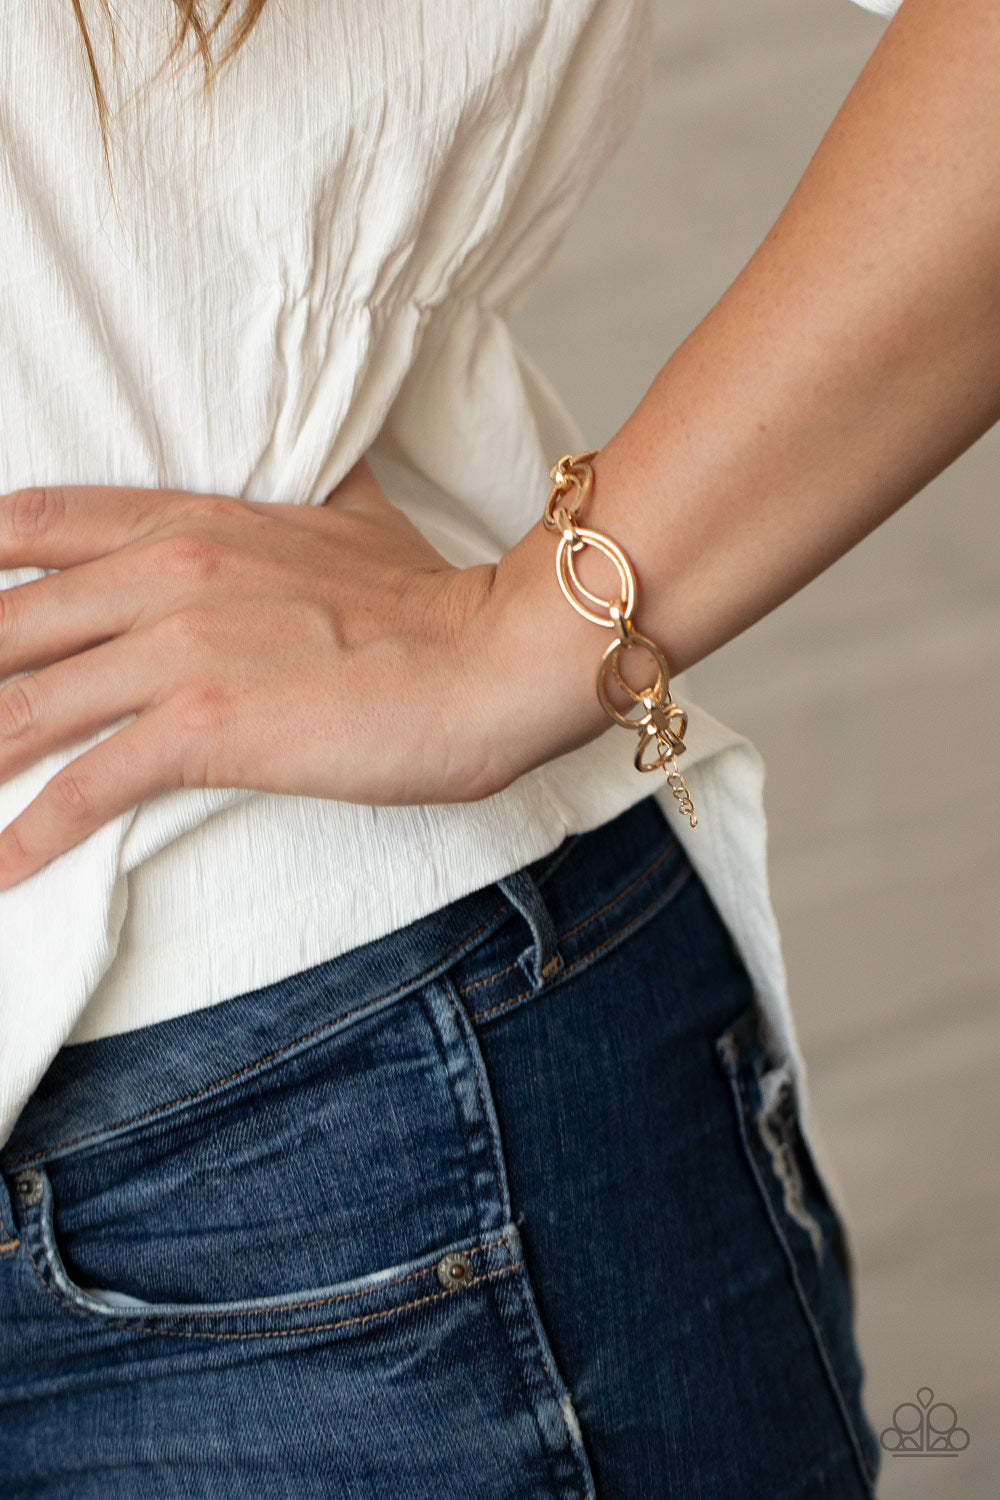 Simplistic Shimmer Gold Bracelet - Paparazzi Accessories